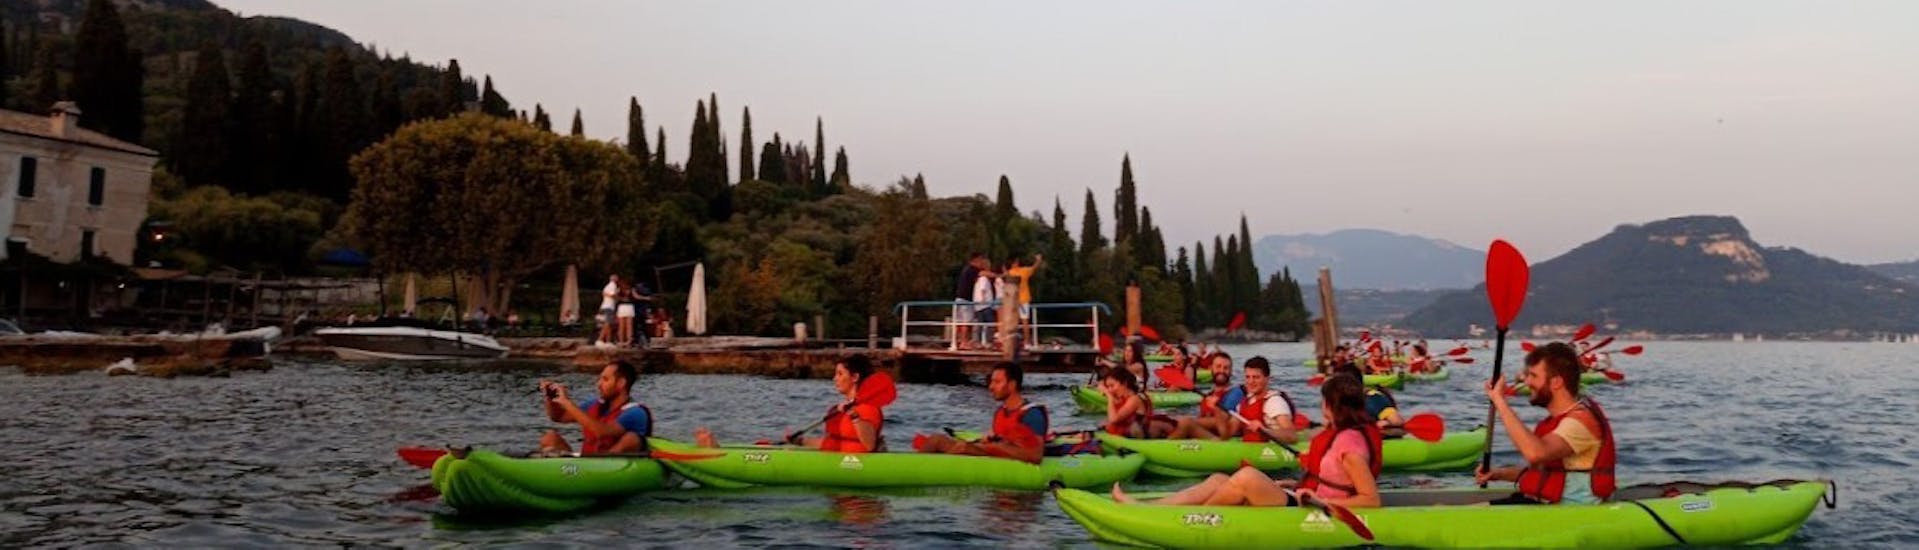 Eine Gruppe bei der Kajaktour bei Sonnenuntergang auf dem Gardasee für Familien und Freunde.